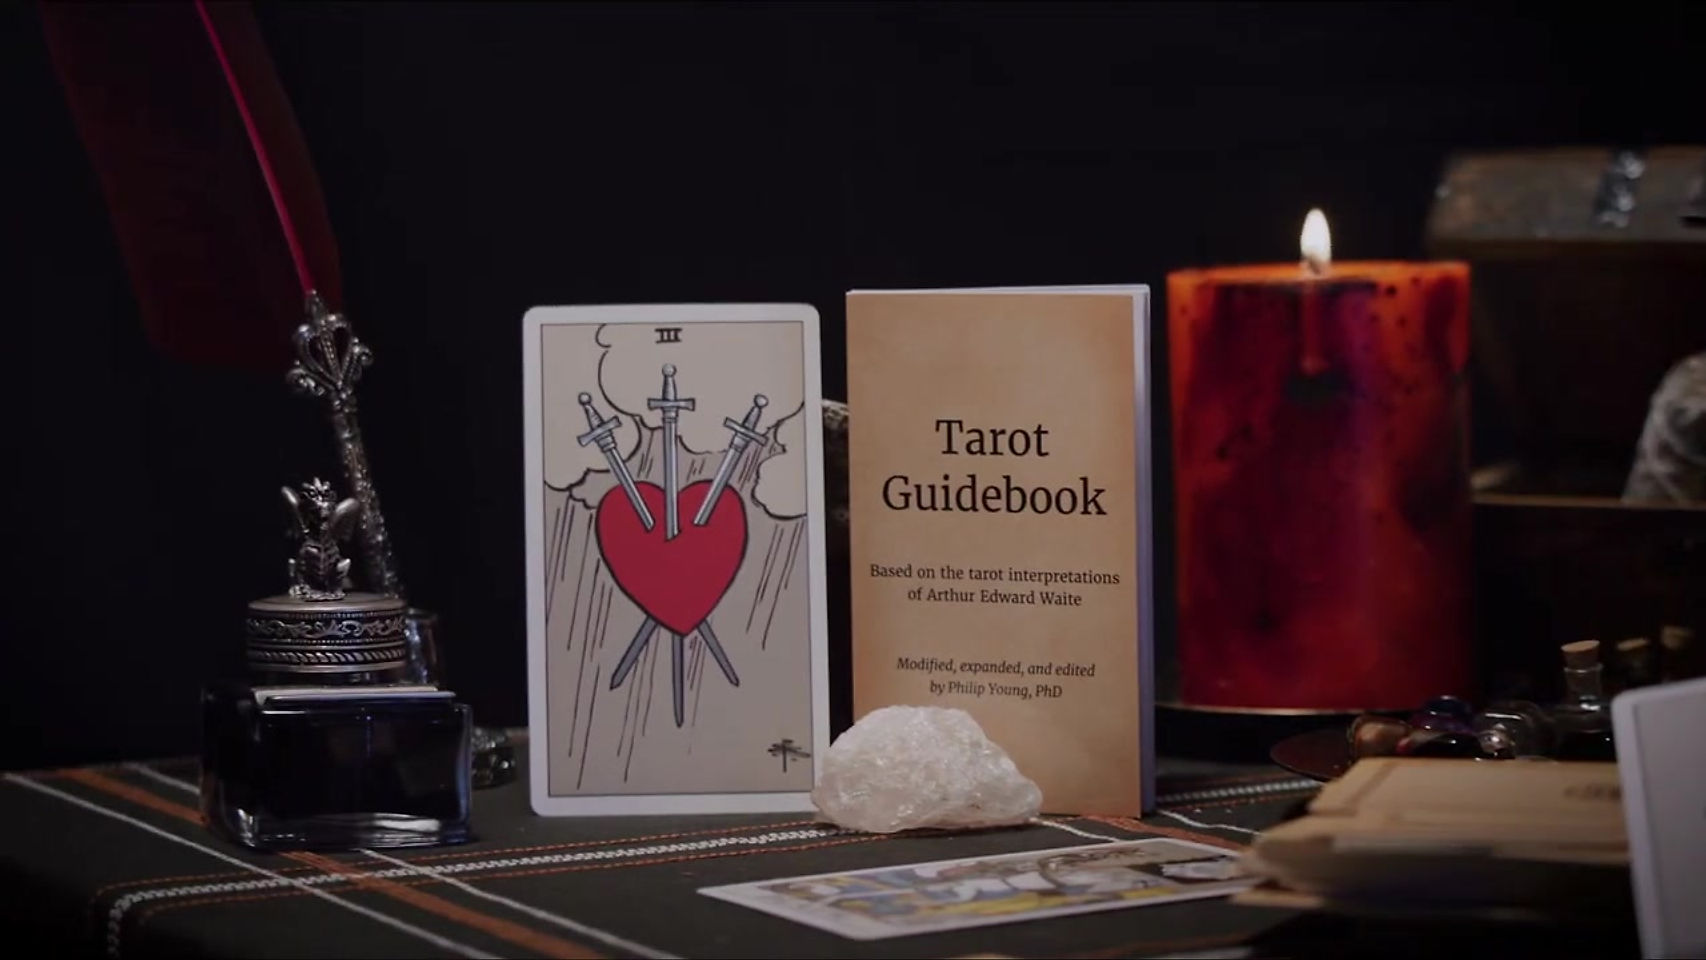 The Original Tarot Card